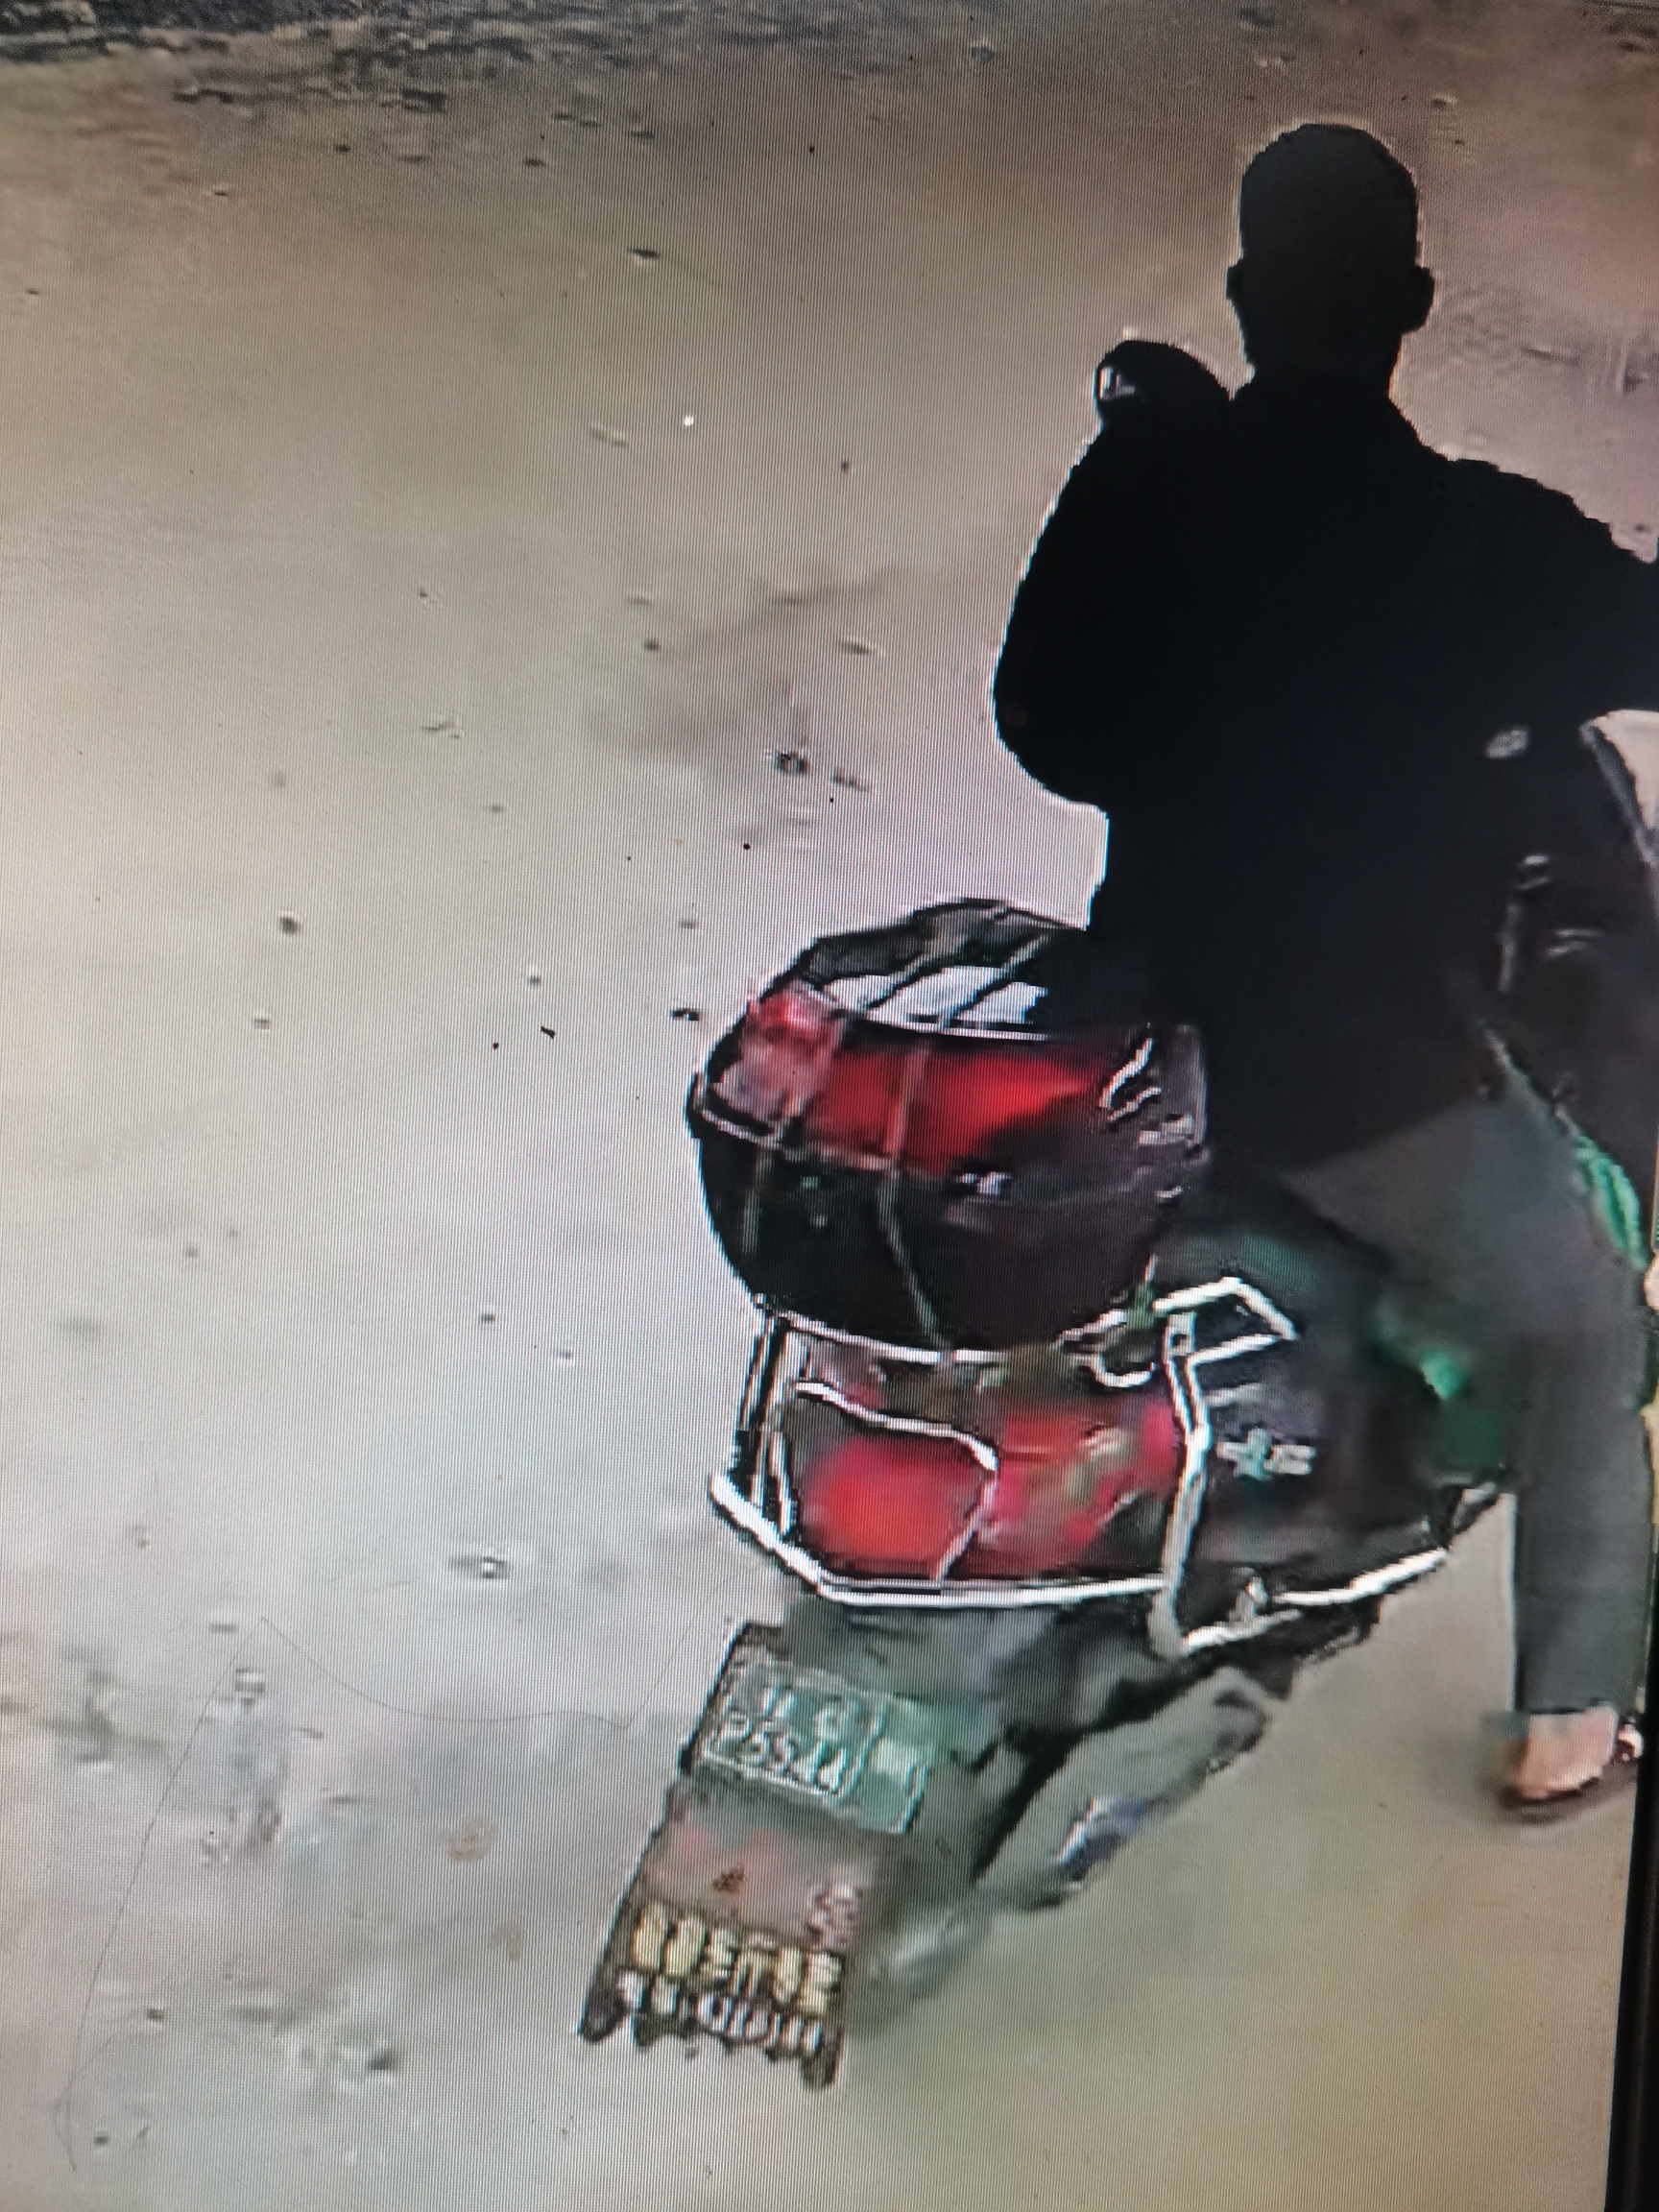 仙葫泉停车车偷打菜刀的套管钢的小偷还是没捉到888 / 作者:13977259800 / 帖子ID:295284